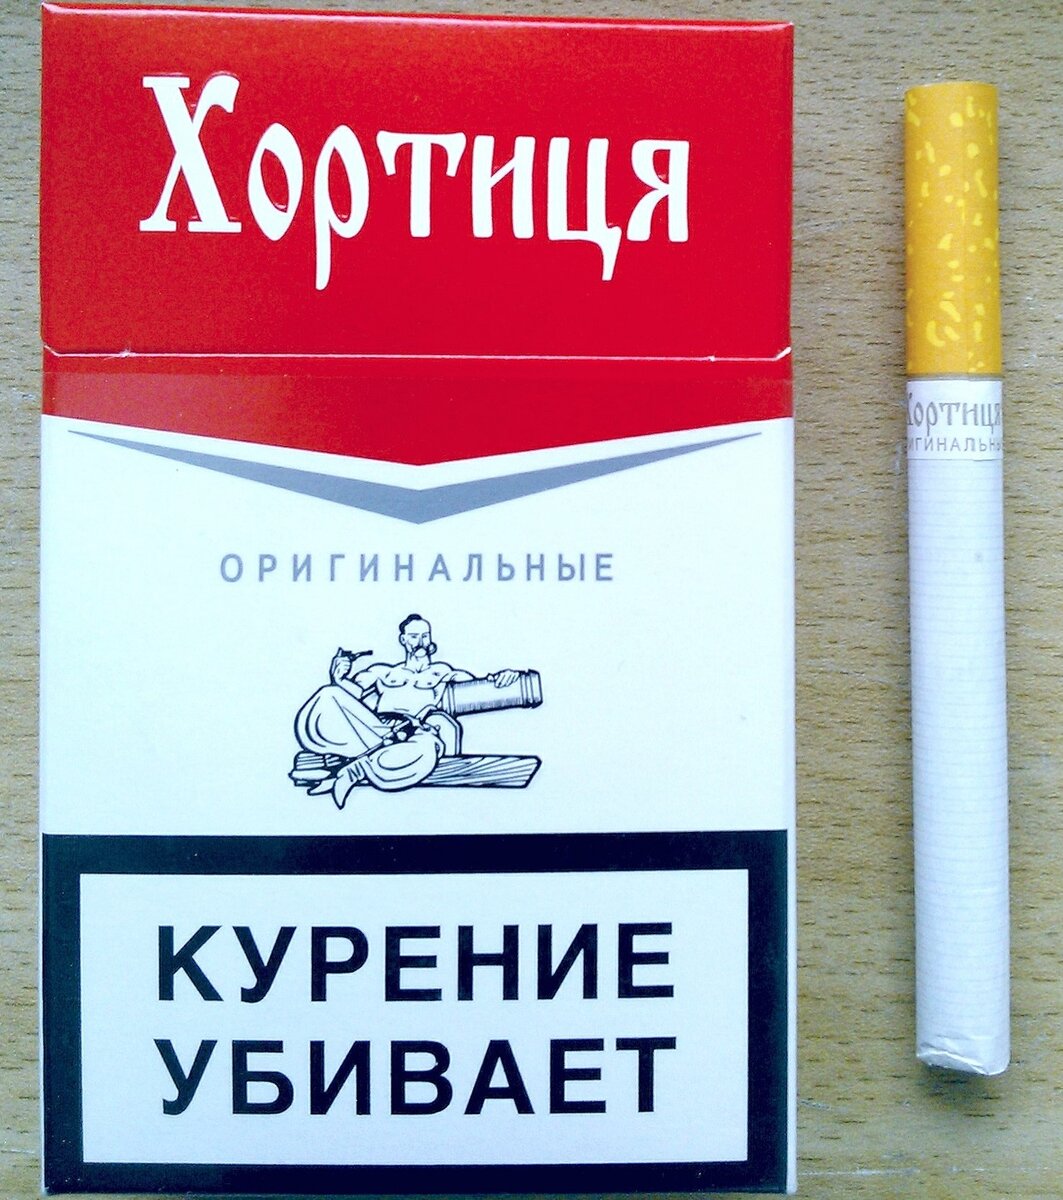 Сигареты 2222 купить. Сигареты Хортица красная. Сигареты 2222 Хортица. Сигареты Хортица синяя. Сигареты 2222.